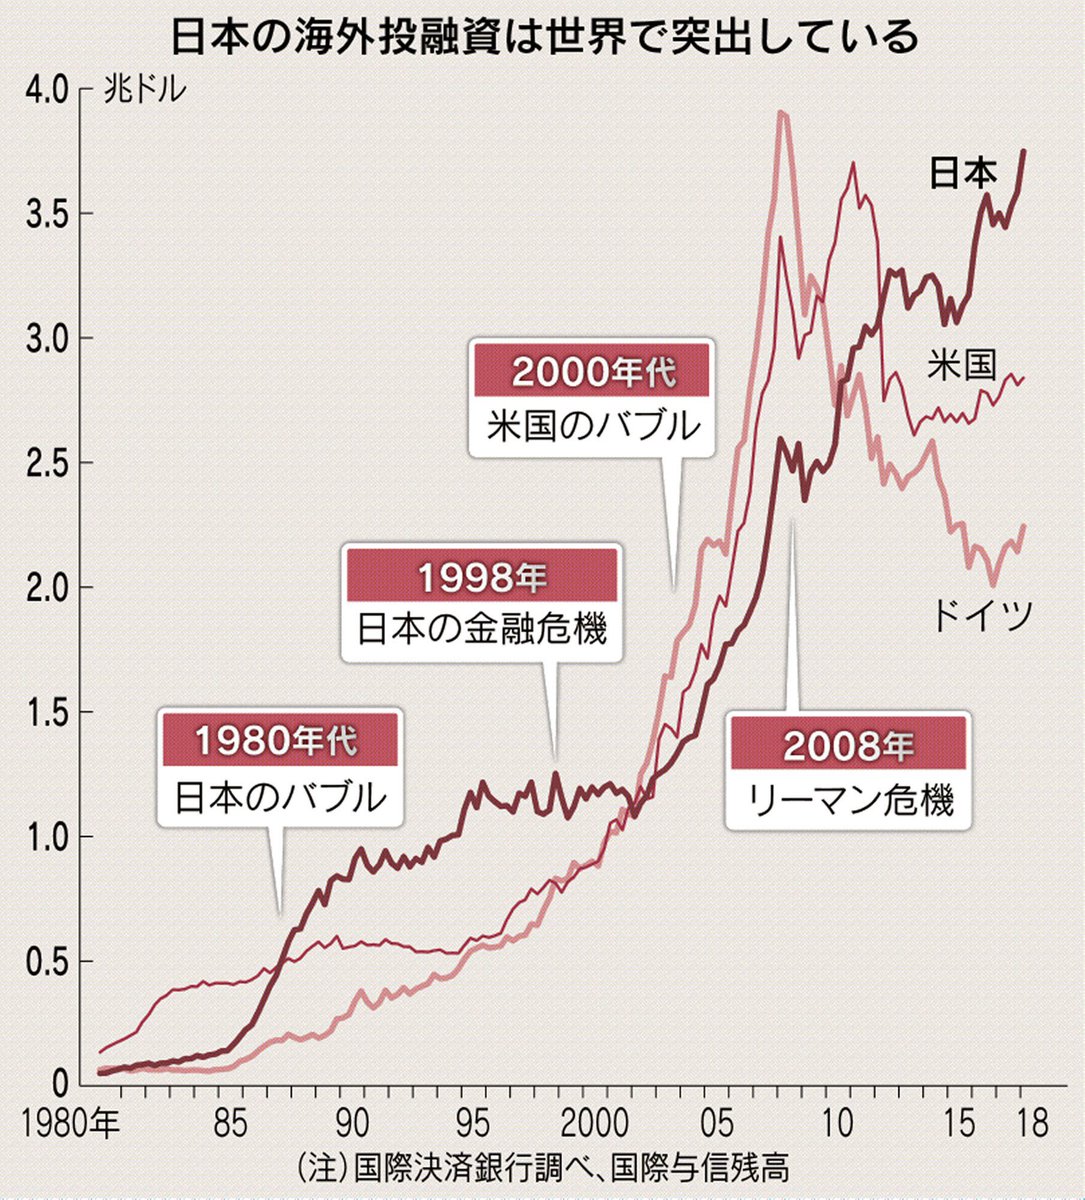 日本経済新聞 電子版 日経電子版 Ar Twitter アメリカやドイツの銀行がリーマン ショック後の10年で海外への投融資を縮小するなか 4割も増やした日本の銀行 背景には日本経済の停滞という 必要に迫られたグローバル化 があります Https T Co Zjfybkimkf